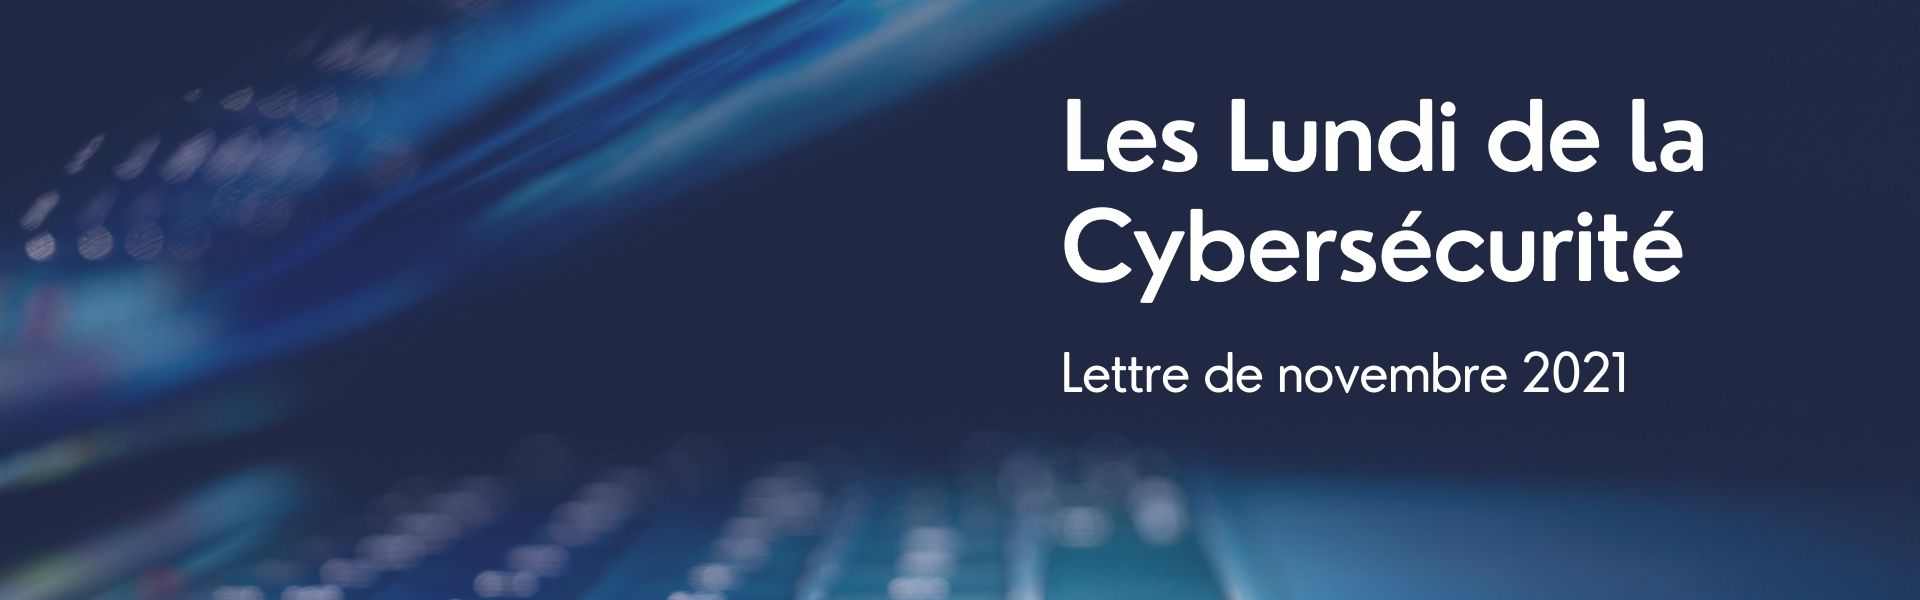 Article Lundi de la Cybersécurité novembre 2021 : Crise systémique et Etat-stratège